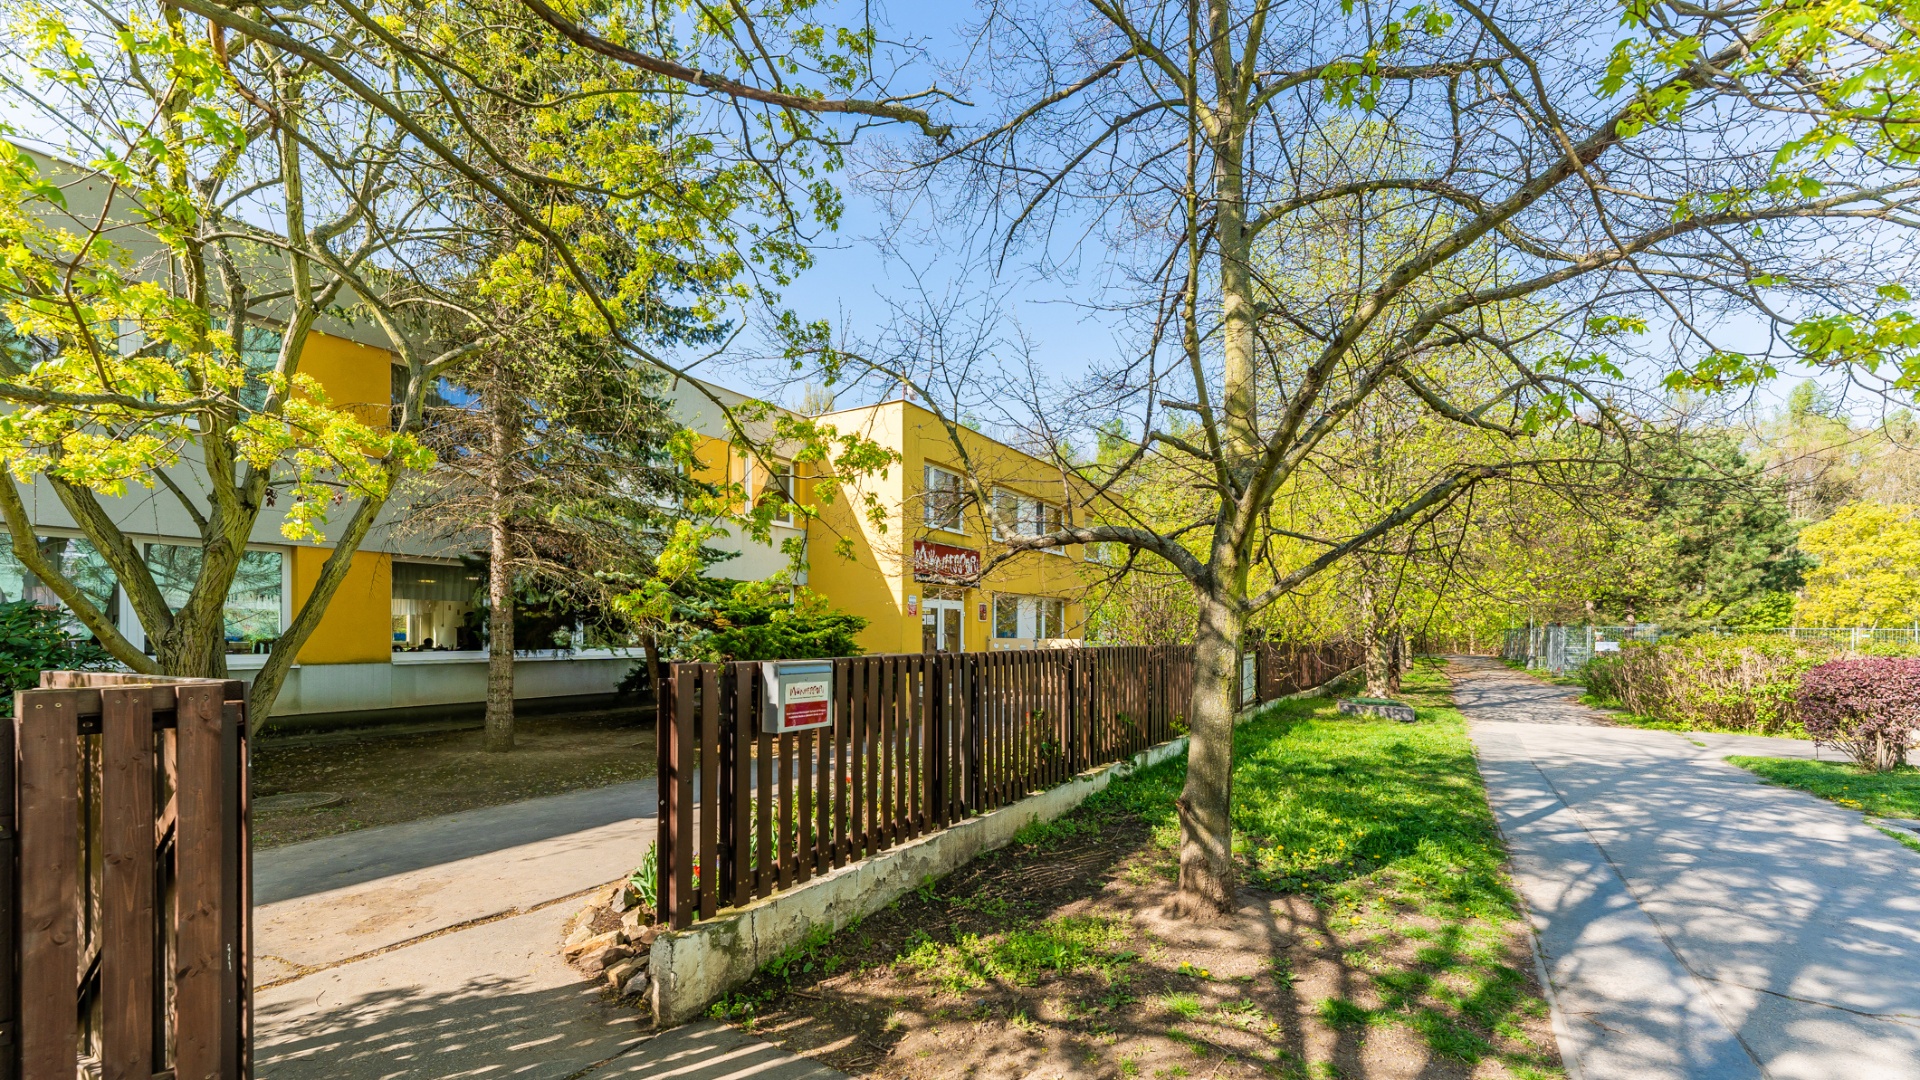 Prodej nového bytu 3+kk (75 m² + lodžie) u lesa  - Praha - Chodov